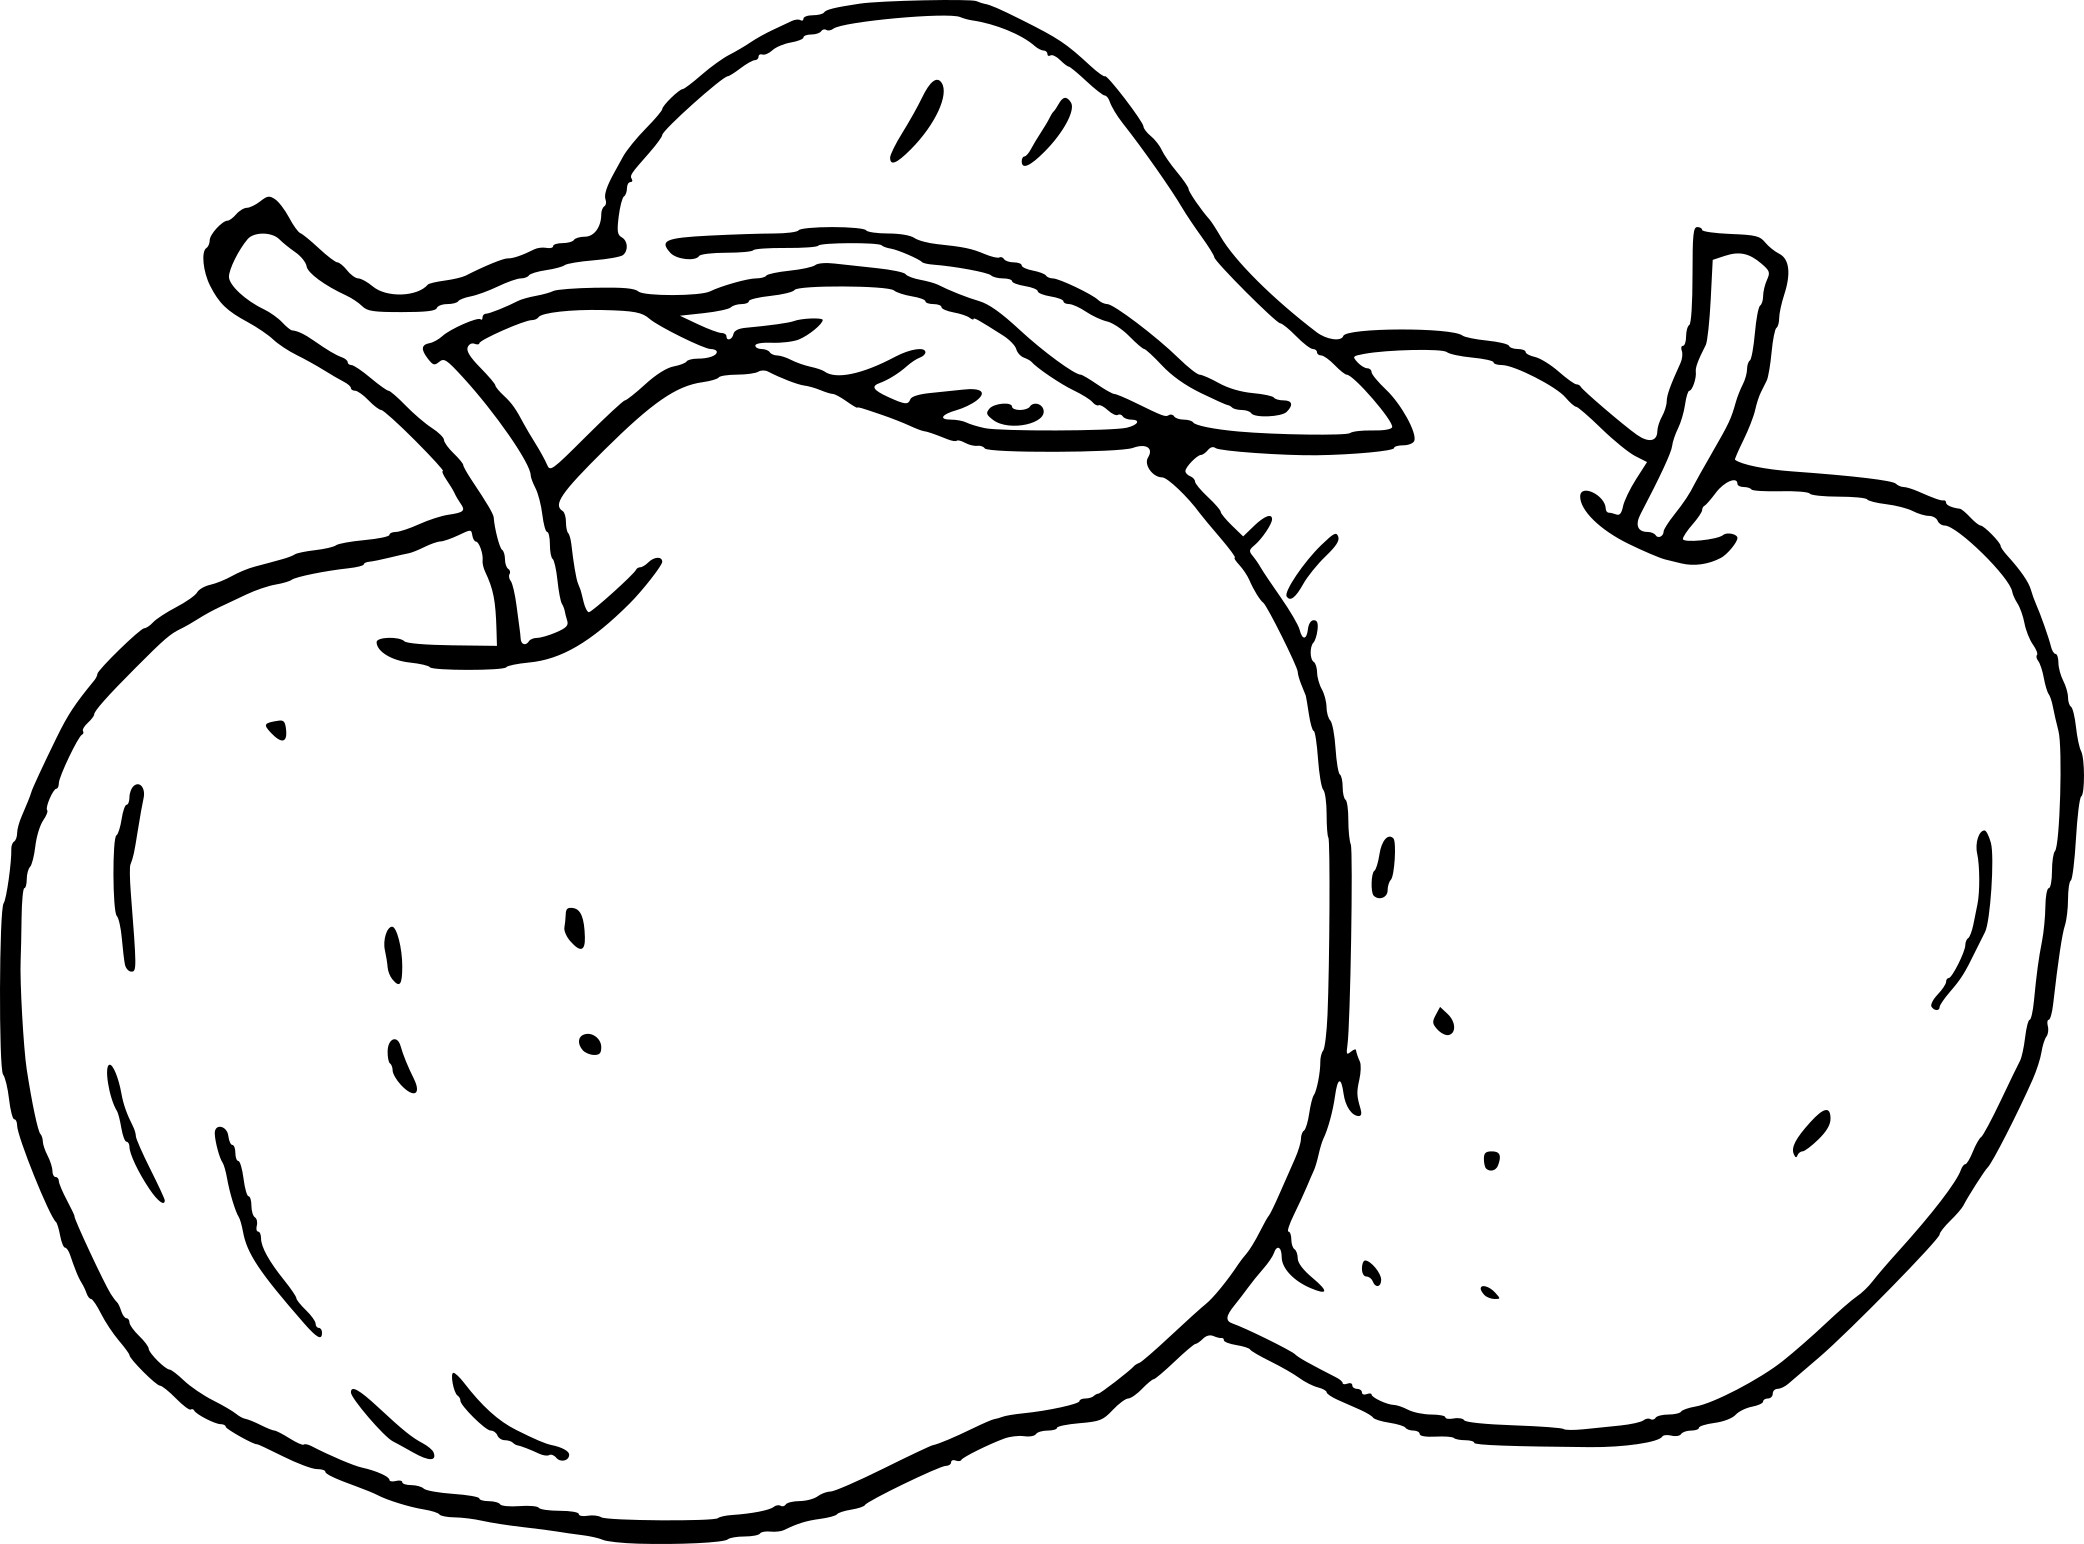 Disegno di Due mele da colorare